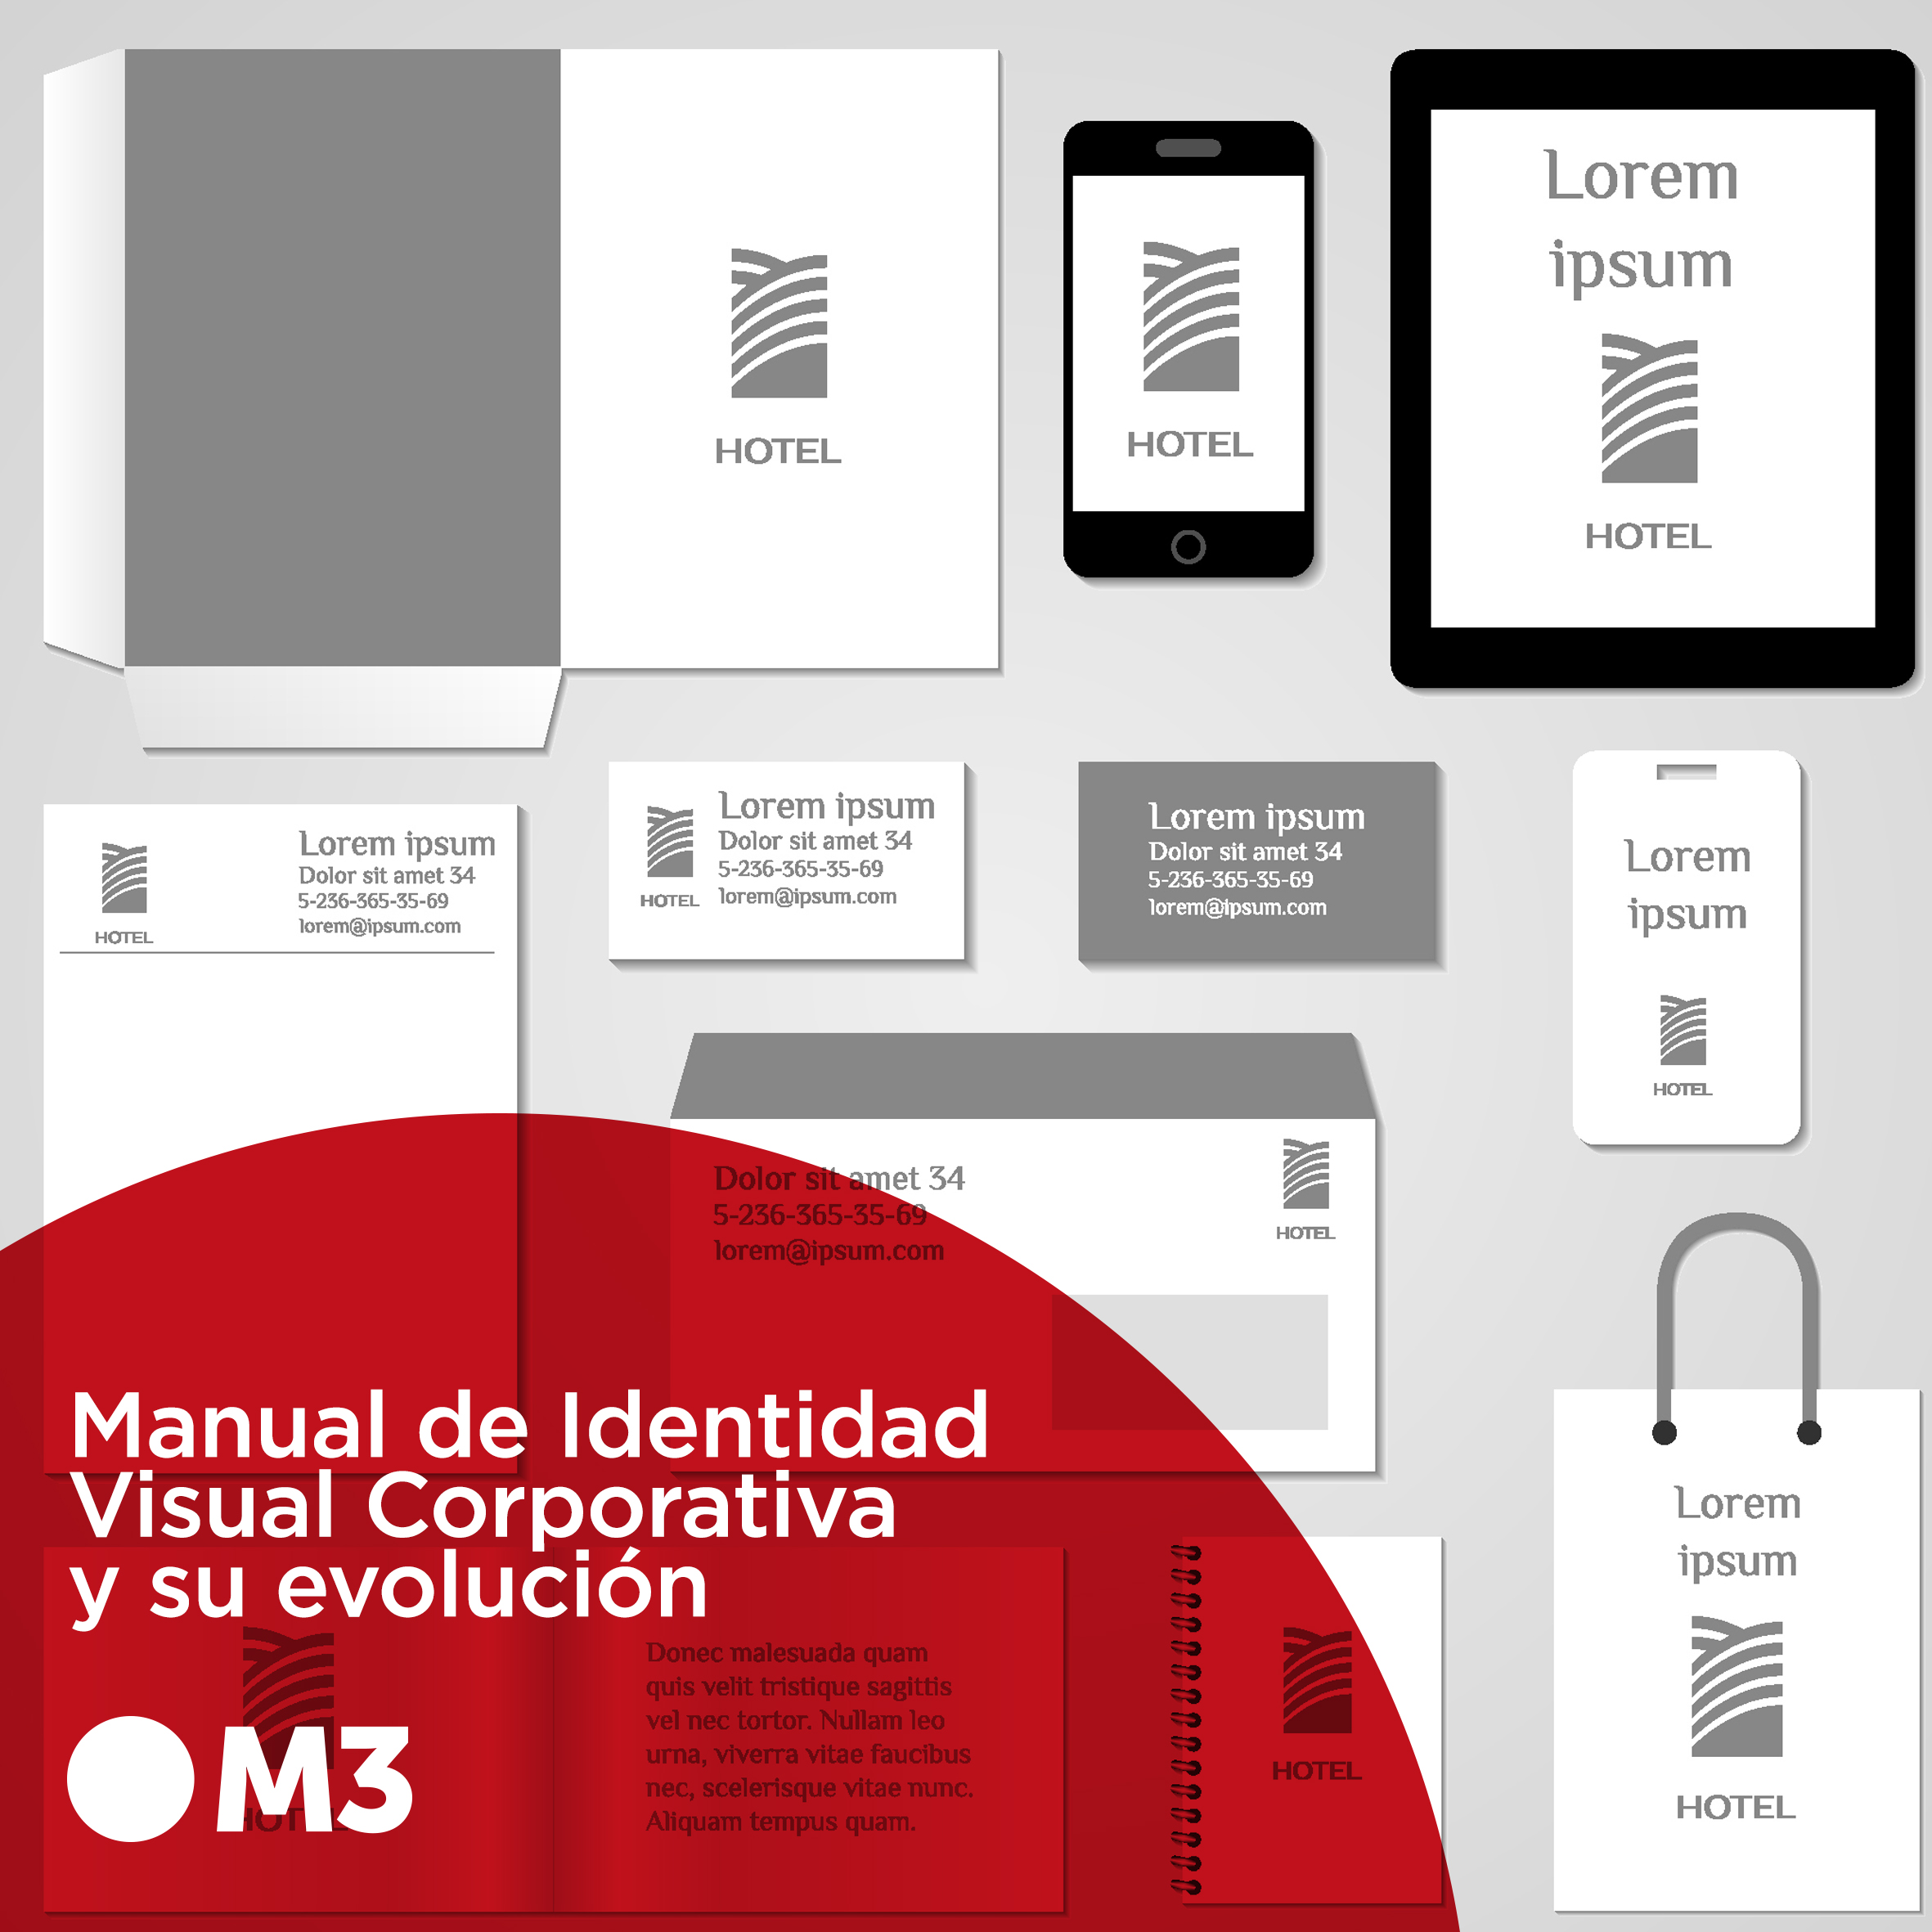 Manual de Identidad Visual Corporativa y su evolución